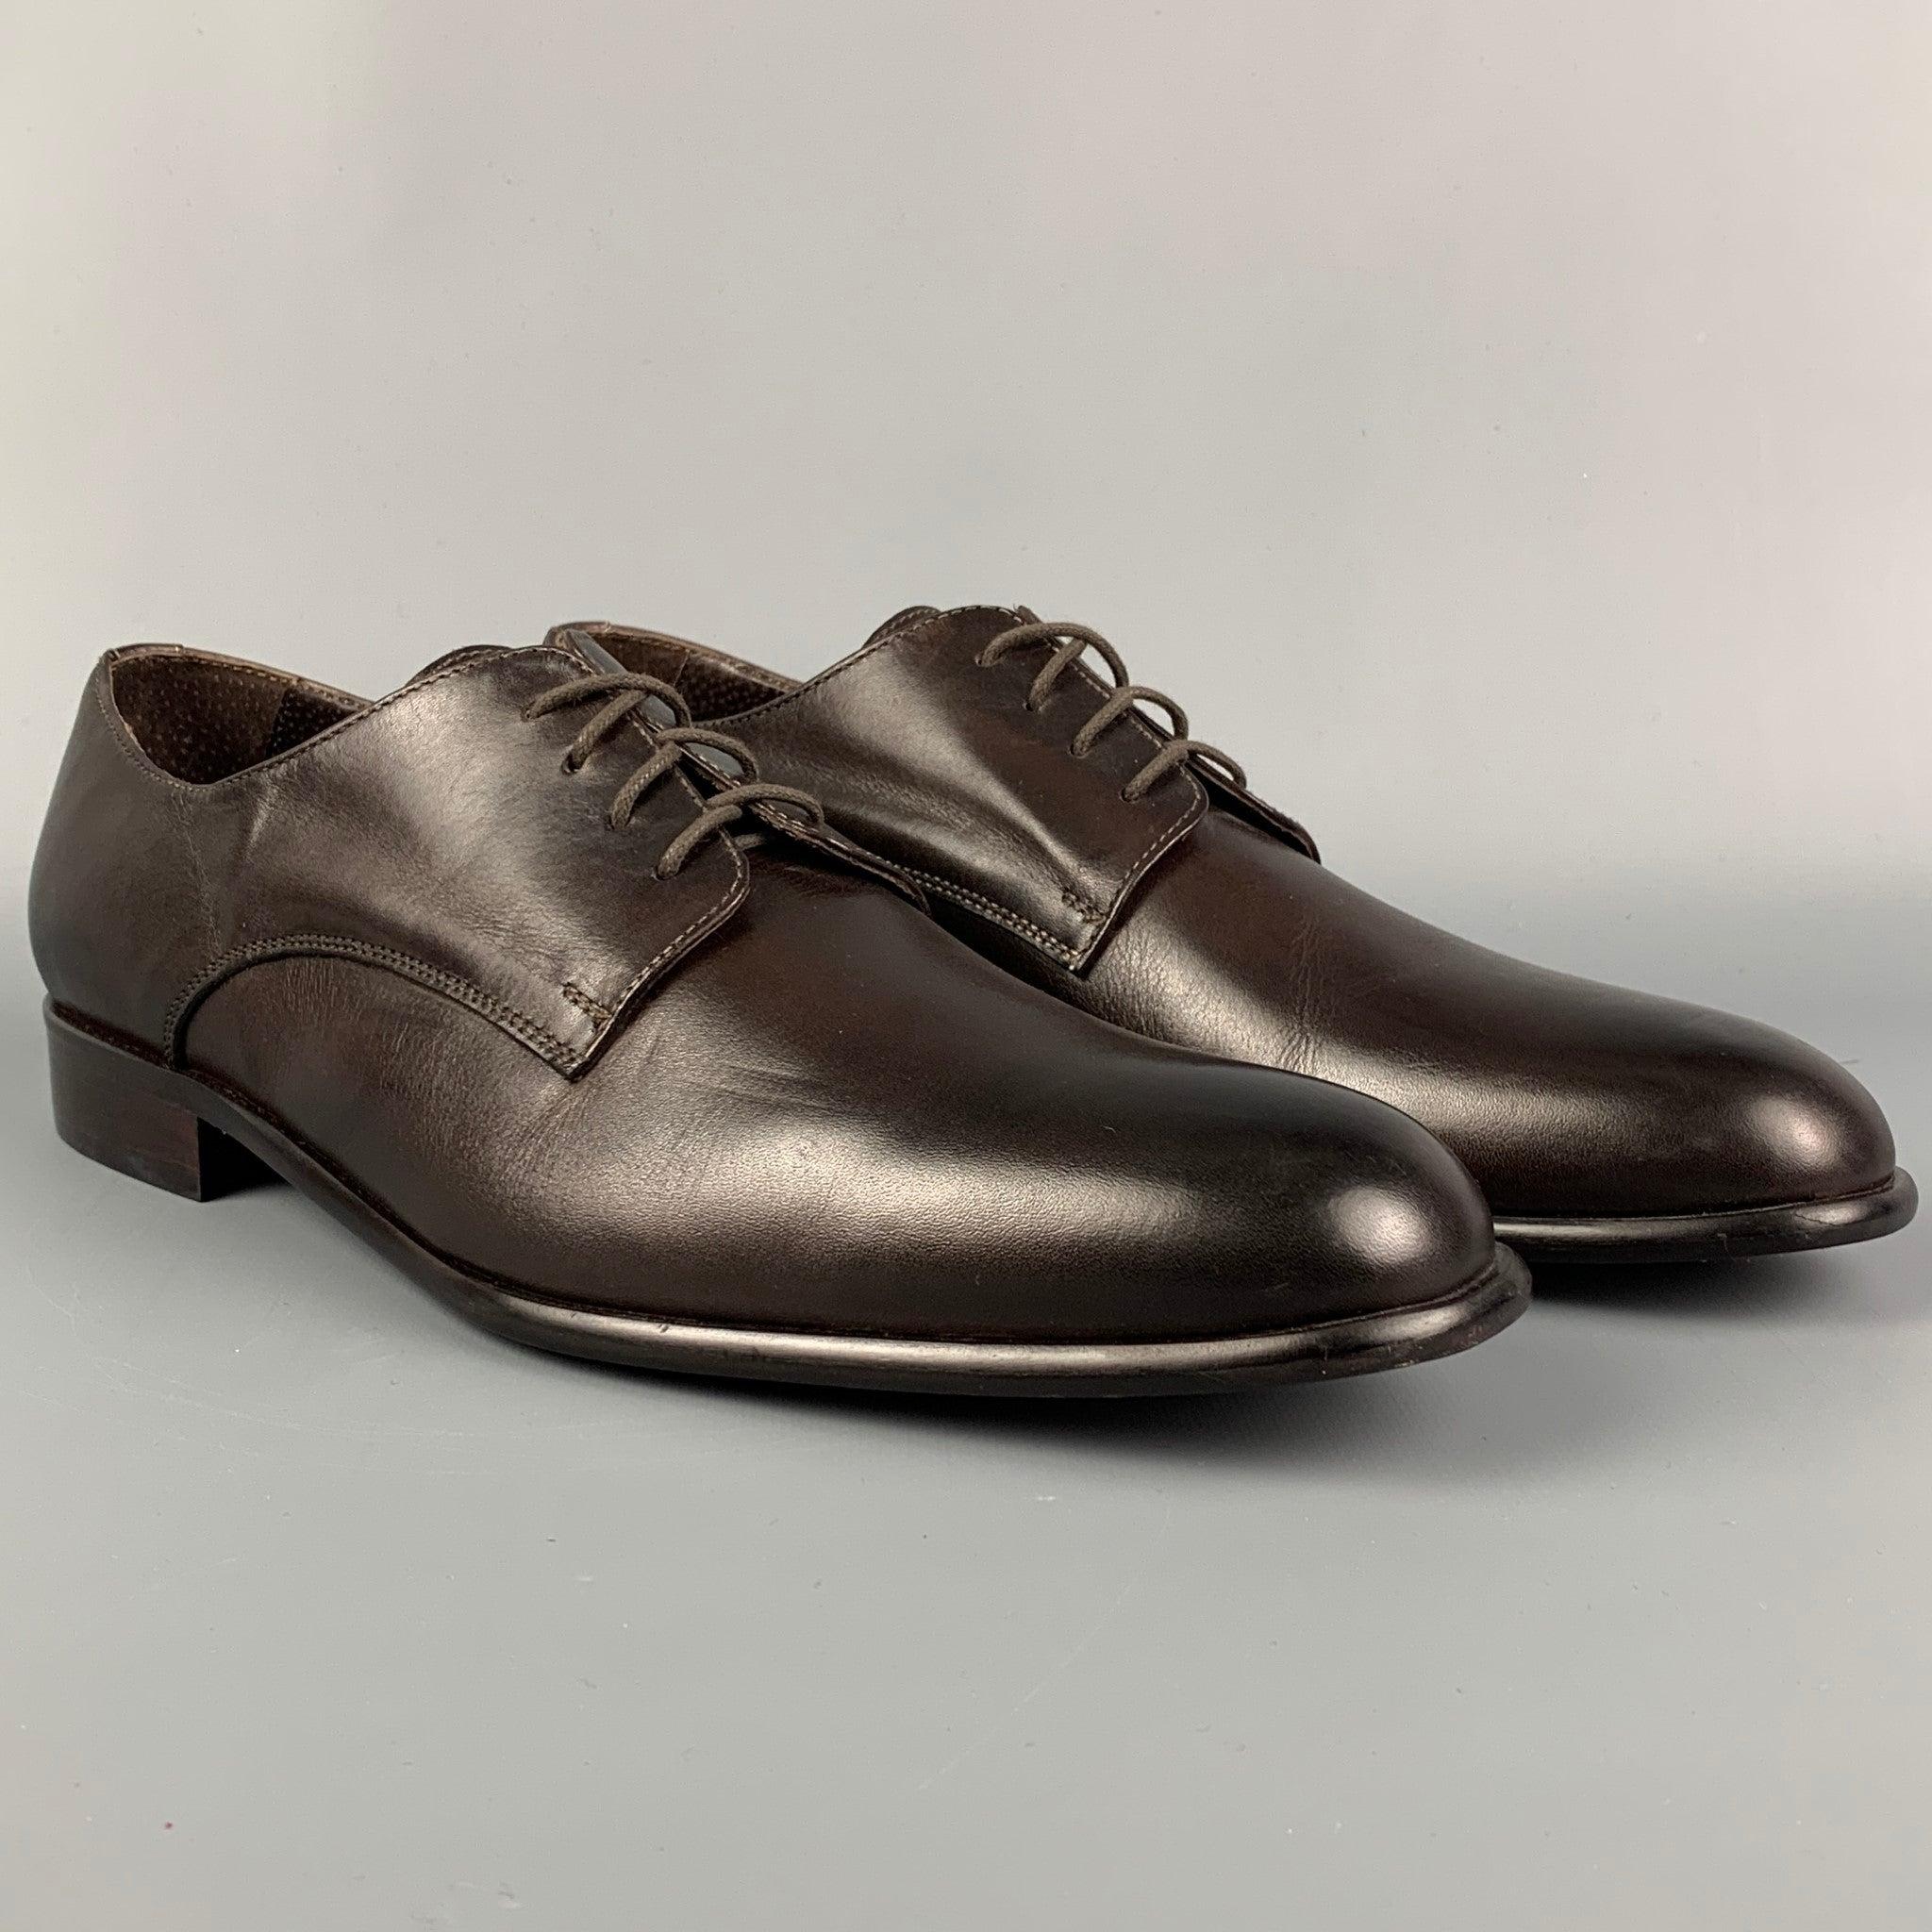 Les chaussures habillées JOHN GALLIANO sont en cuir marron et présentent un bout carré et une fermeture à lacets. Fait en Italie.
Excellent
Etat d'occasion. 

Marqué :   44Semelle d'usure : 12.5 pouces  x 4 pouces 
  
  
 
Référence :